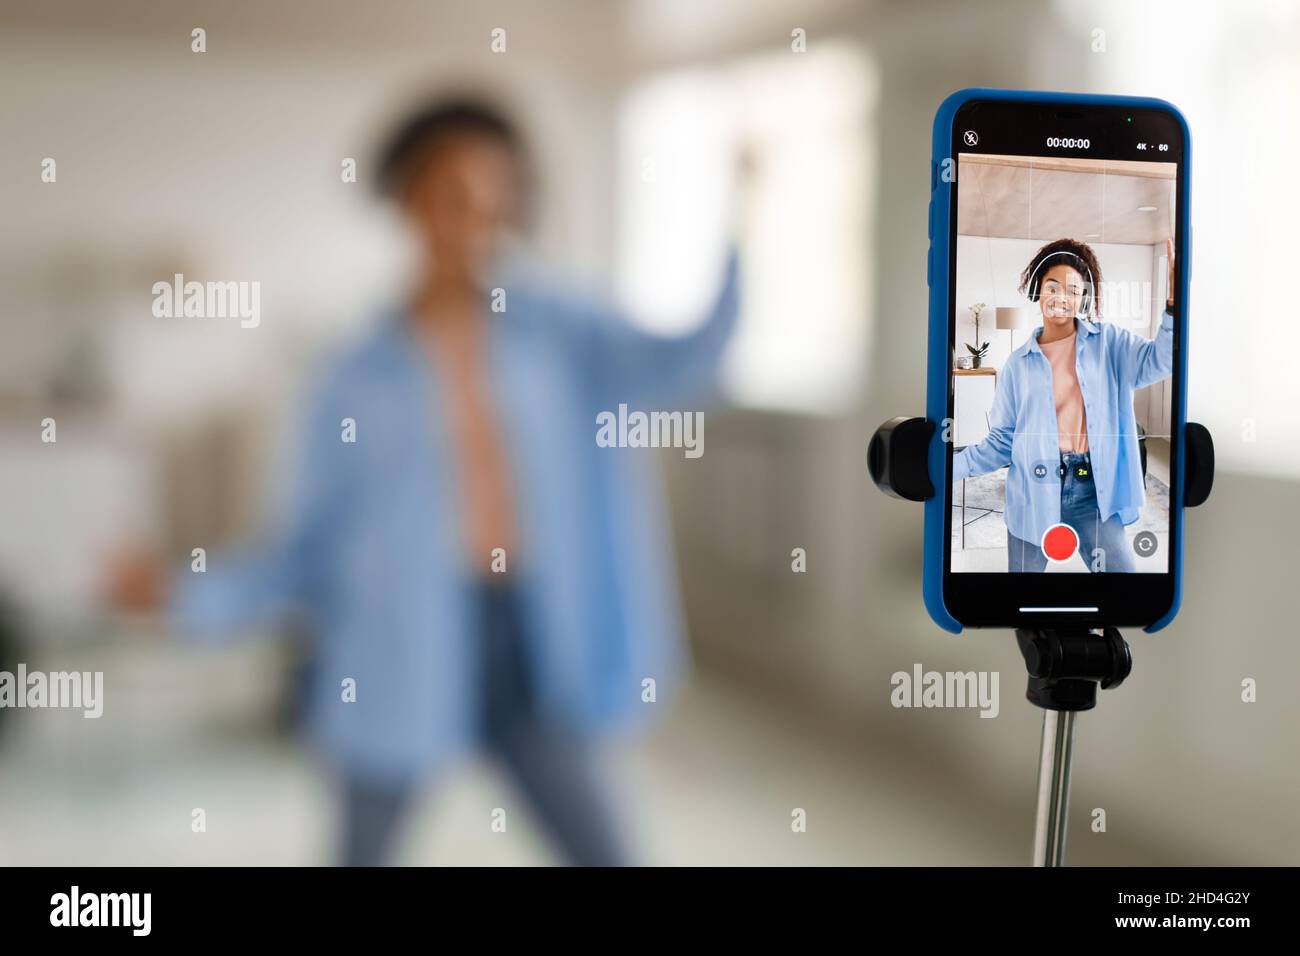 Femme noire gaie filmant de la vidéo sur un téléphone portable Banque D'Images